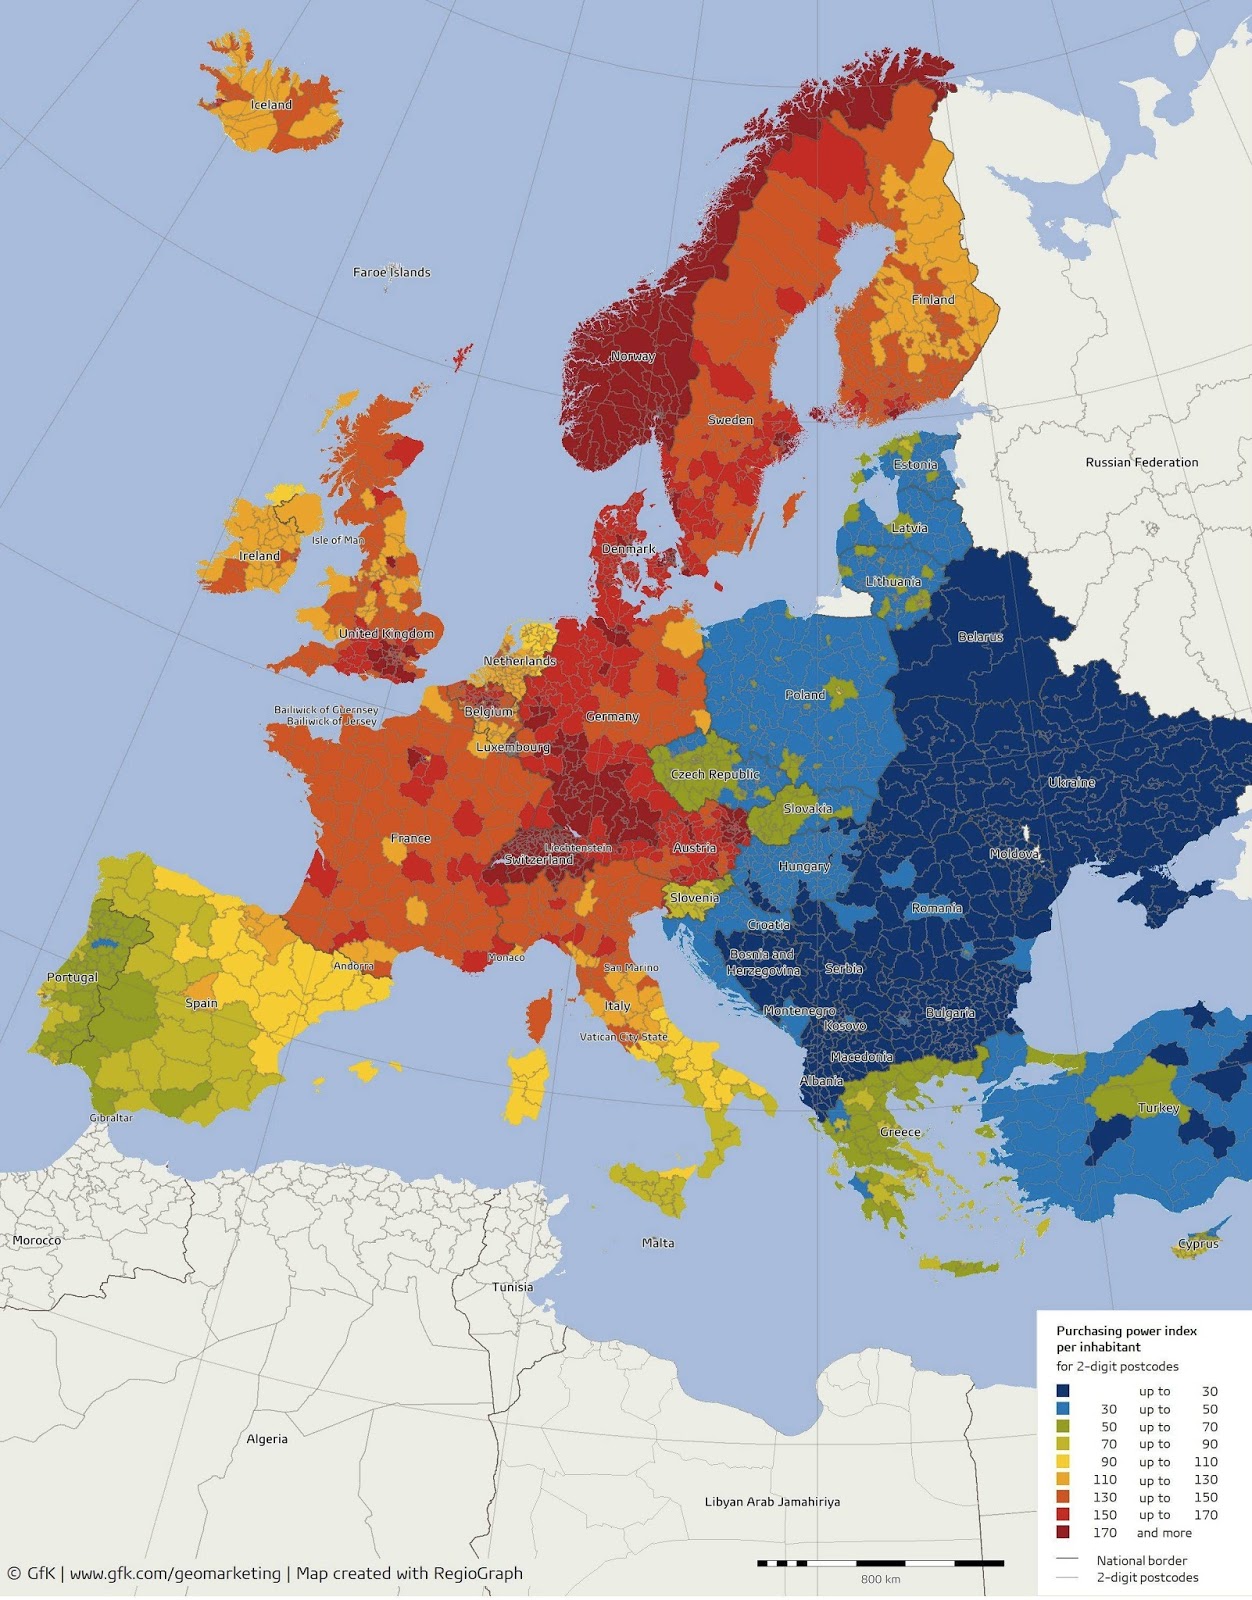 reddito pro capite, mappa dell'Europa